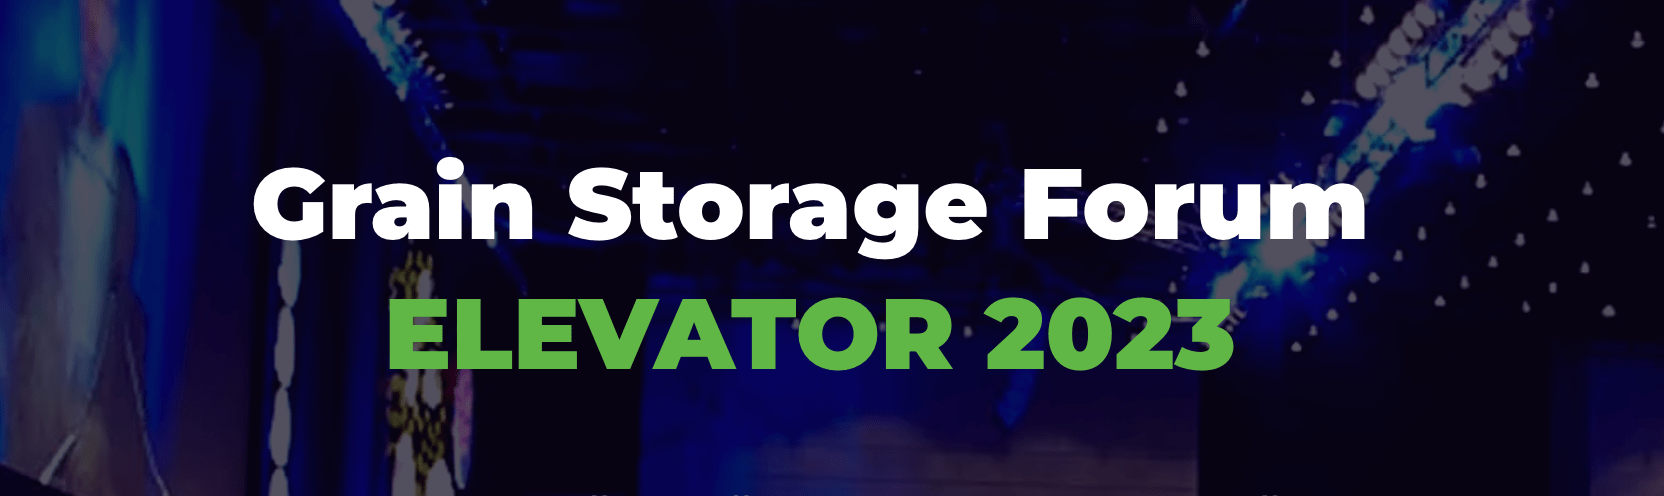 Приглашаем на Grain Storage Forum ELEVATOR 2023!